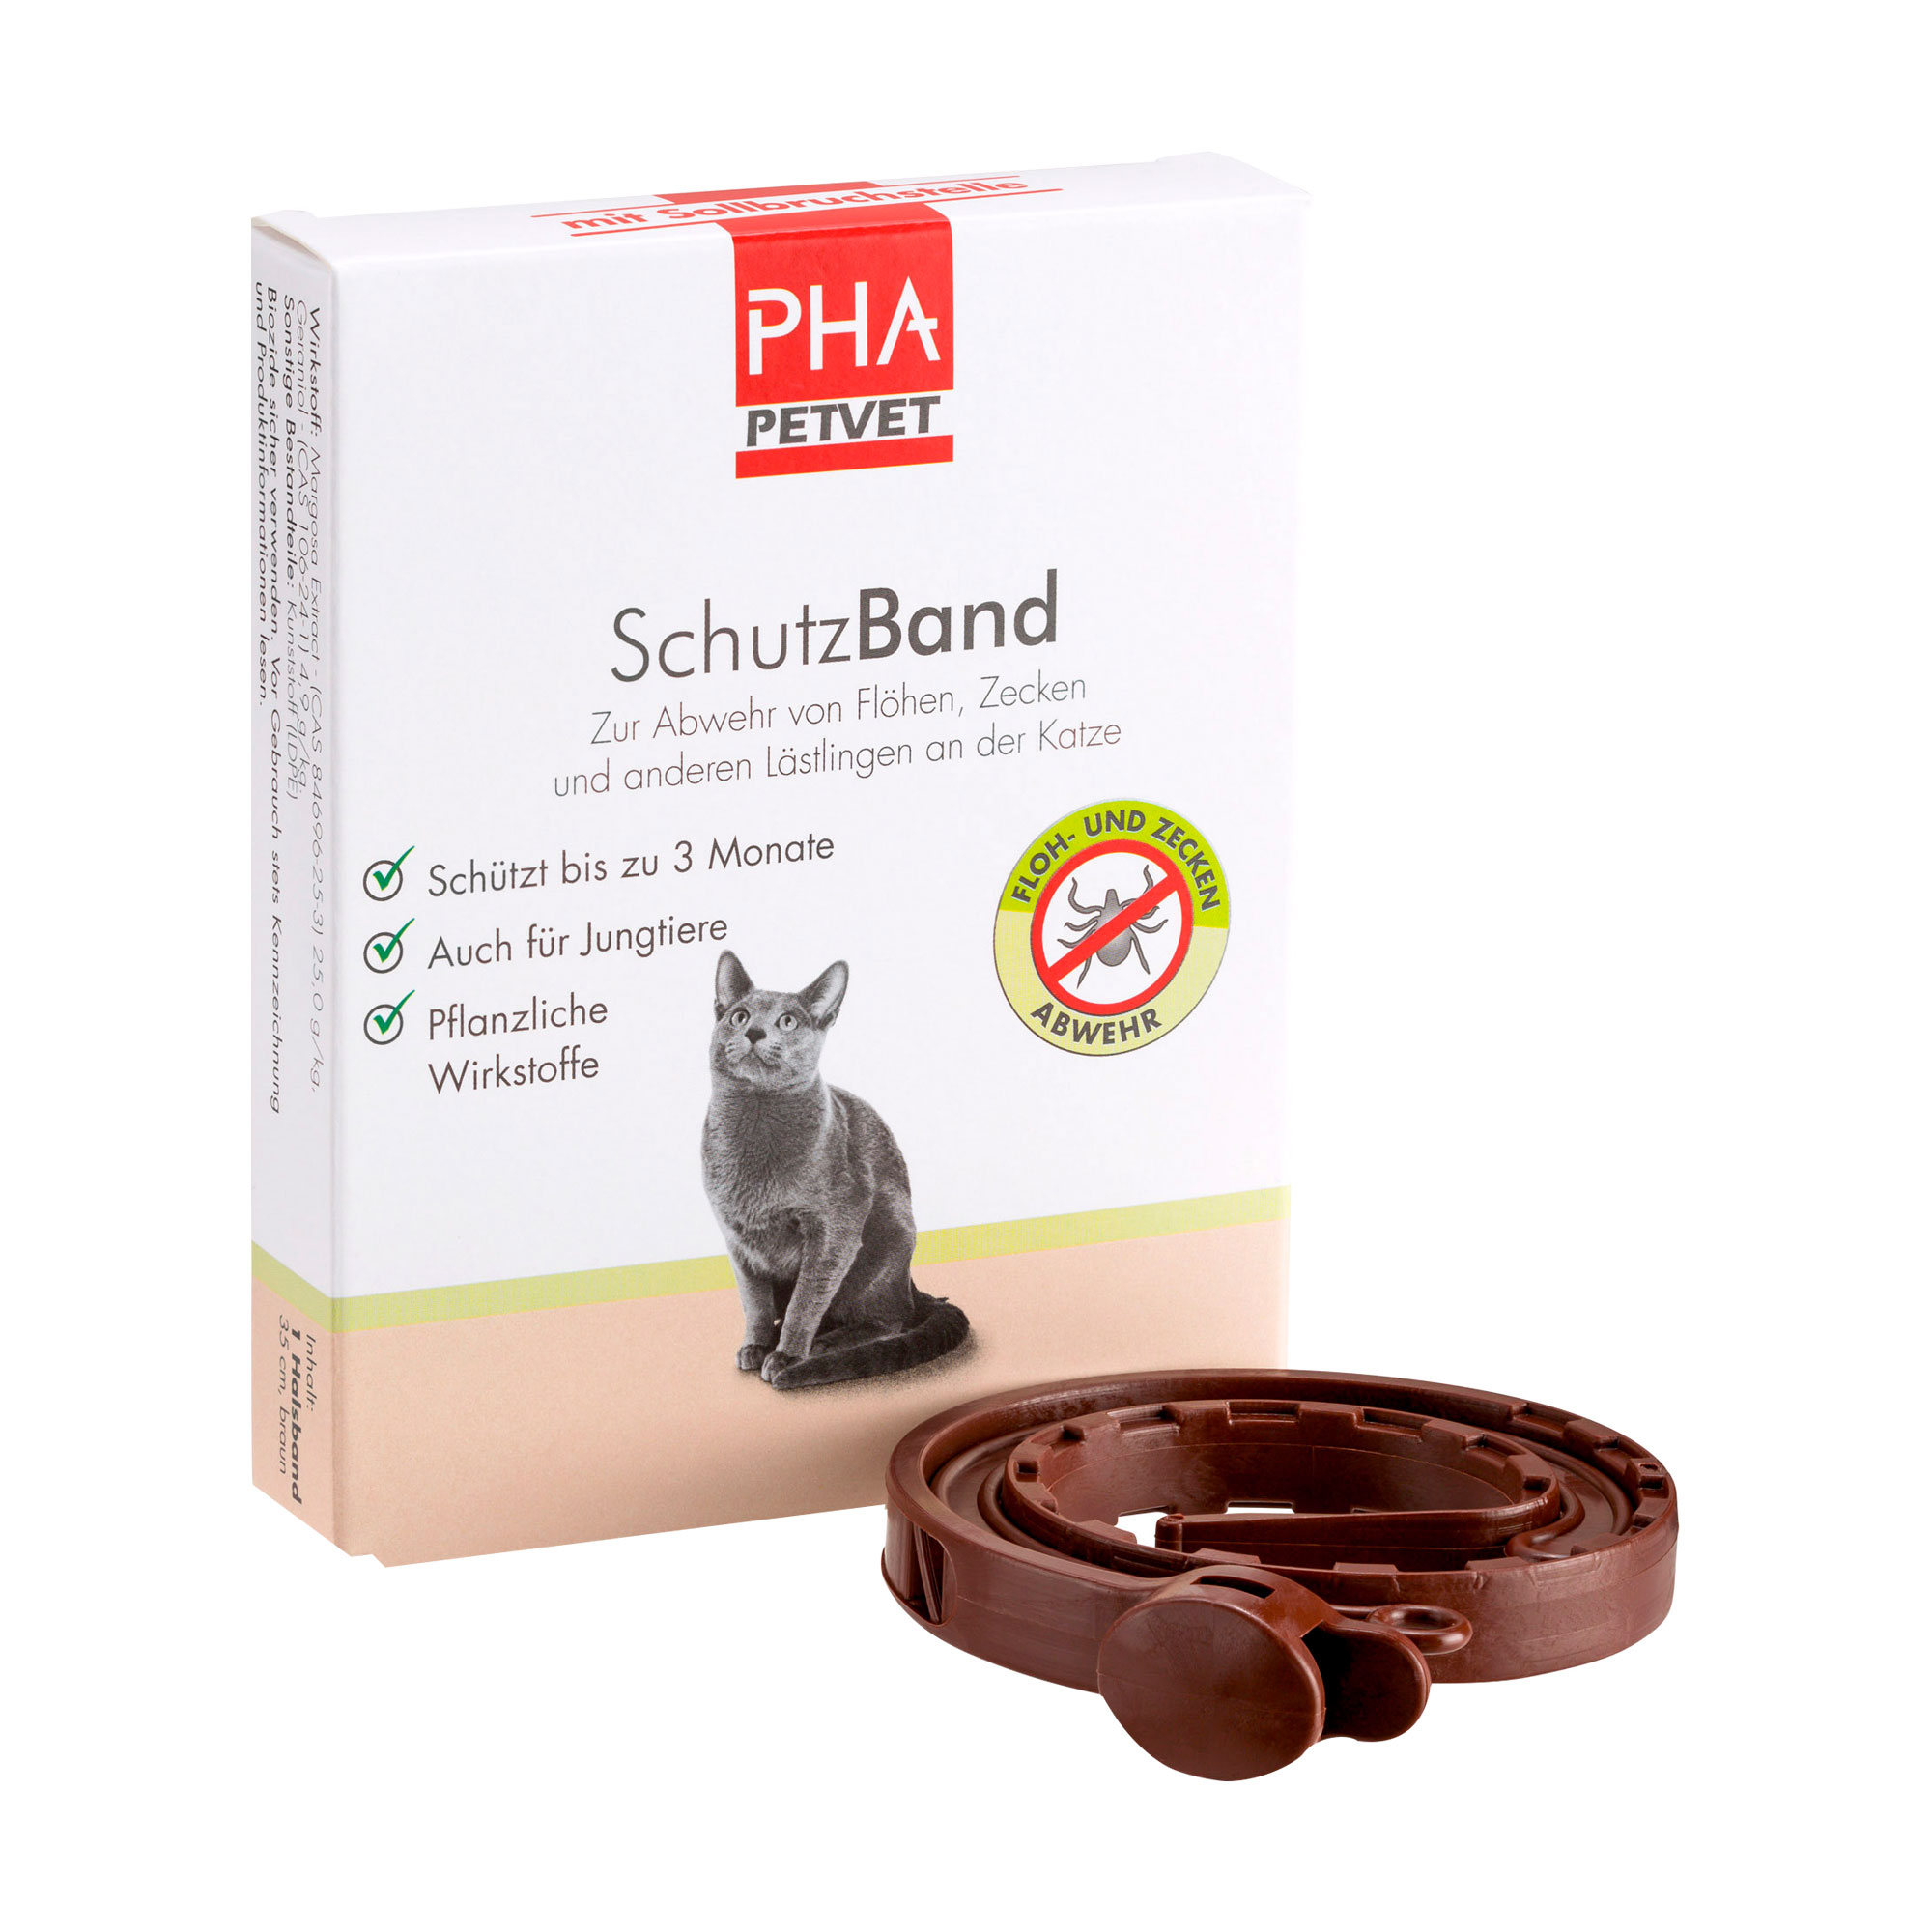 Kunststoffhalsband (35 cm) mit Sollbruchstelle für Katzen zur Abwehr von Flöhen, Zecken und anderen Lästlingen.